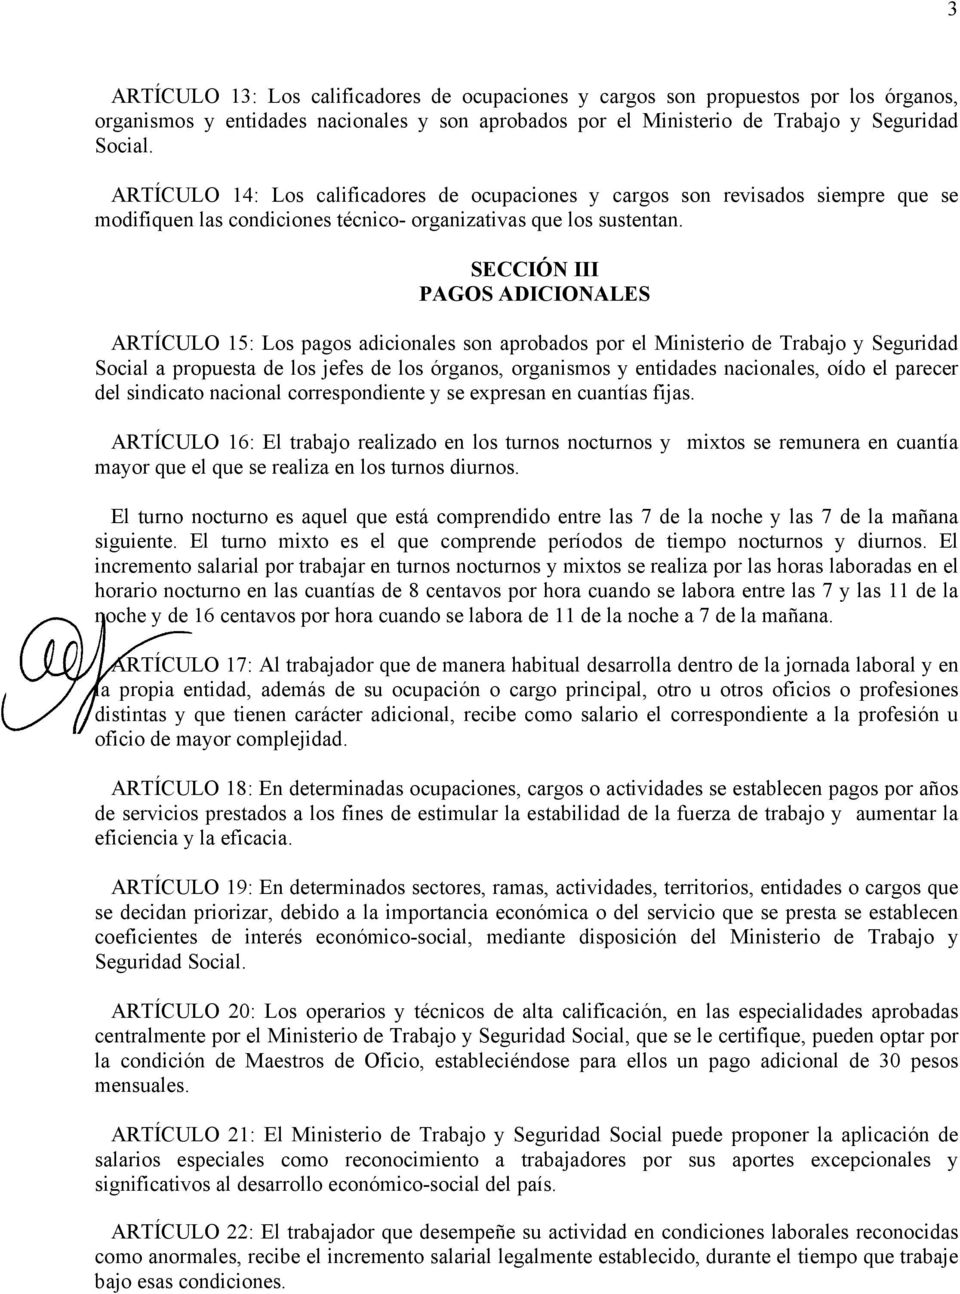 SECCIÓN III PAGOS ADICIONALES ARTÍCULO 15: Los pagos adicionales son aprobados por el Ministerio de Trabajo y Seguridad Social a propuesta de los jefes de los órganos, organismos y entidades